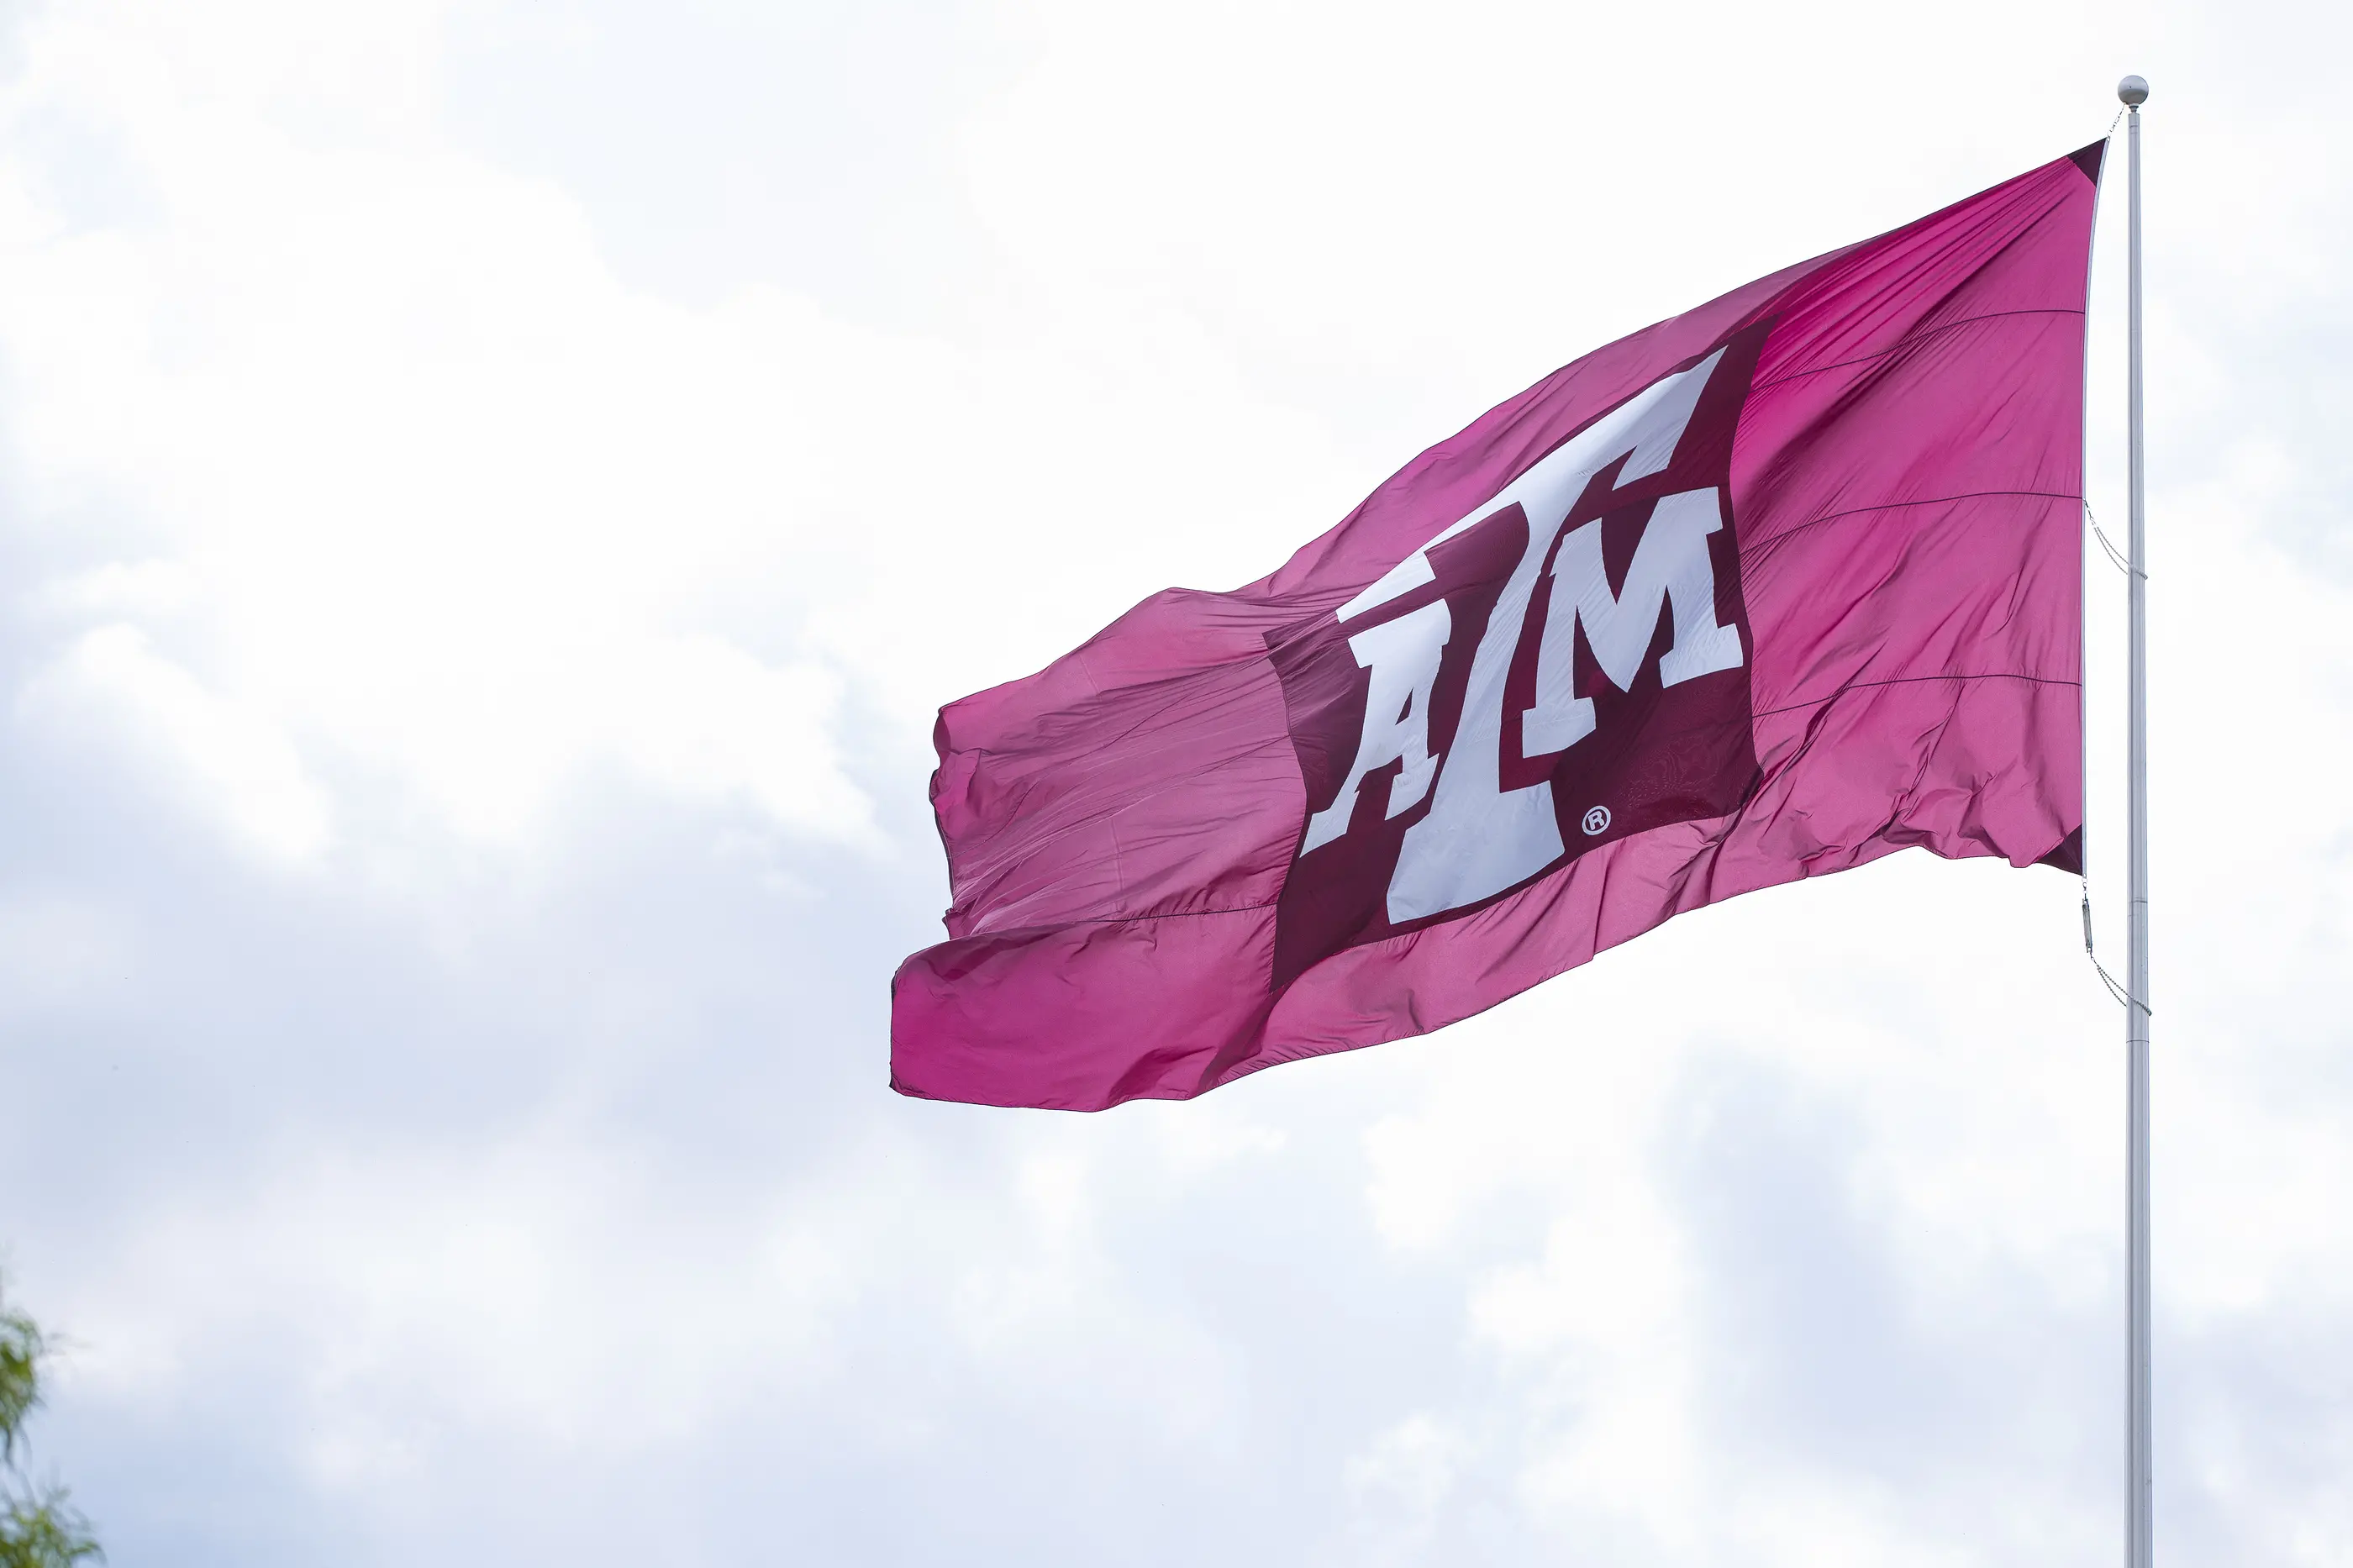 texas-a&m-university-flag-against-sky